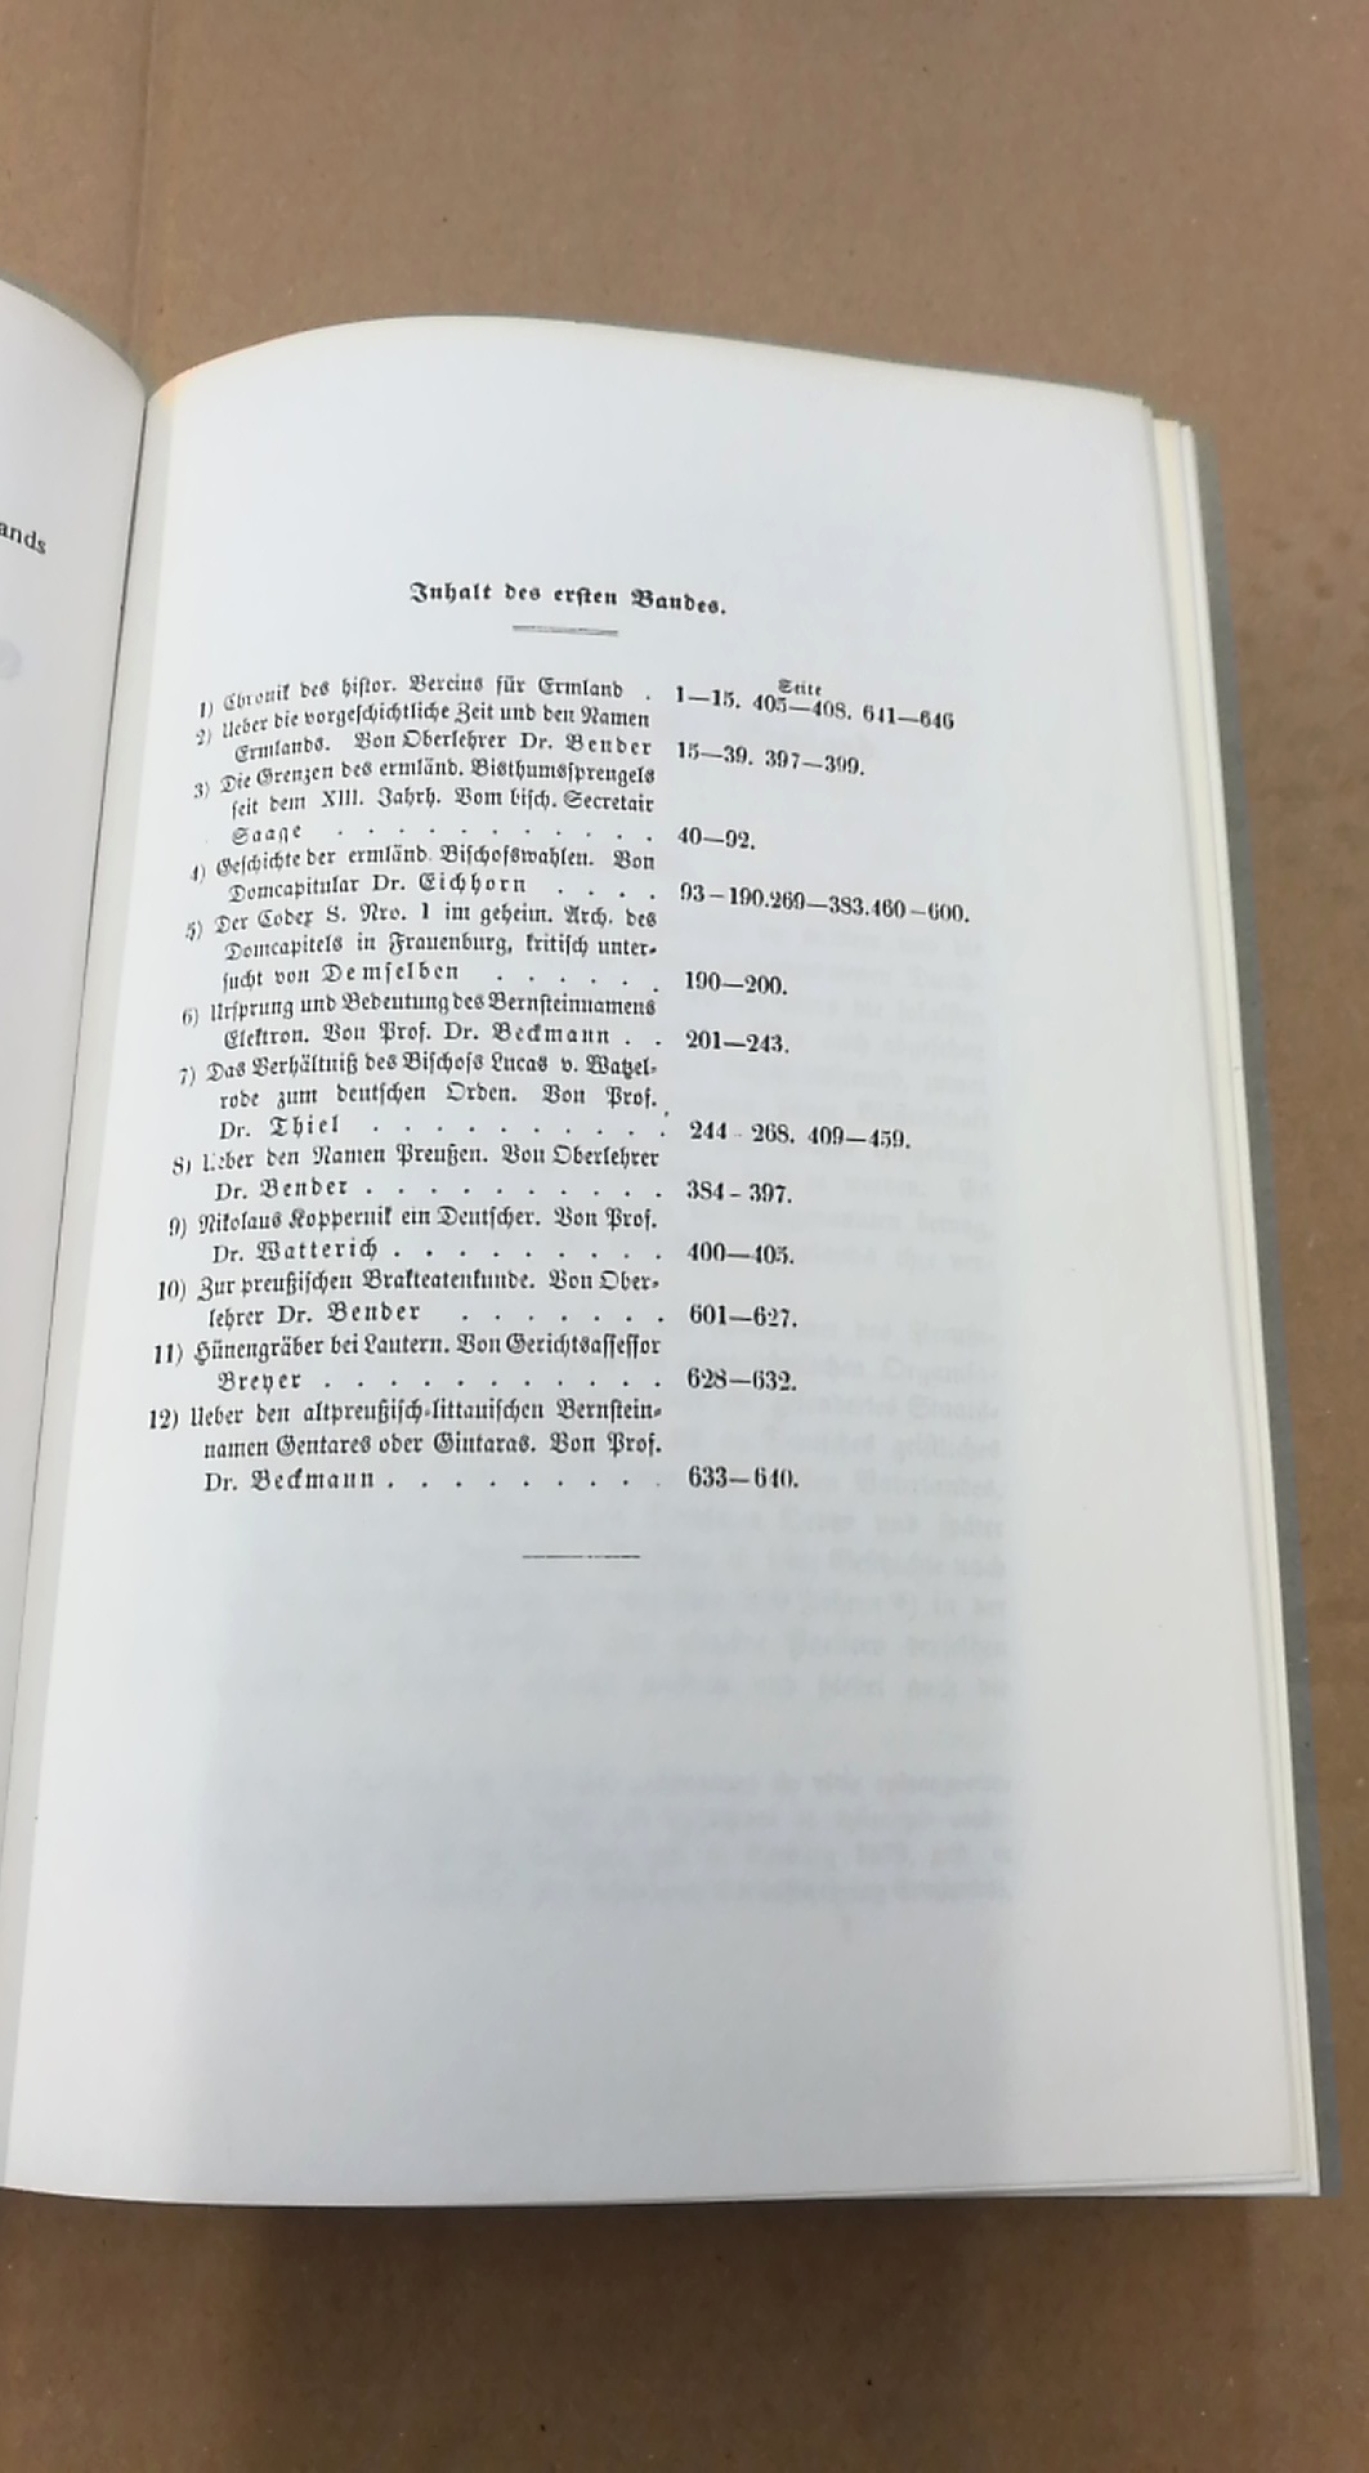 Historischer Verein Ermland: Zeitschrift für die Geschichte und Altertumskunde Ermlands. (ZGAE) 7 Bände 1860 -1881. Unveränderter Nachdruck der Ausgabe 1860.